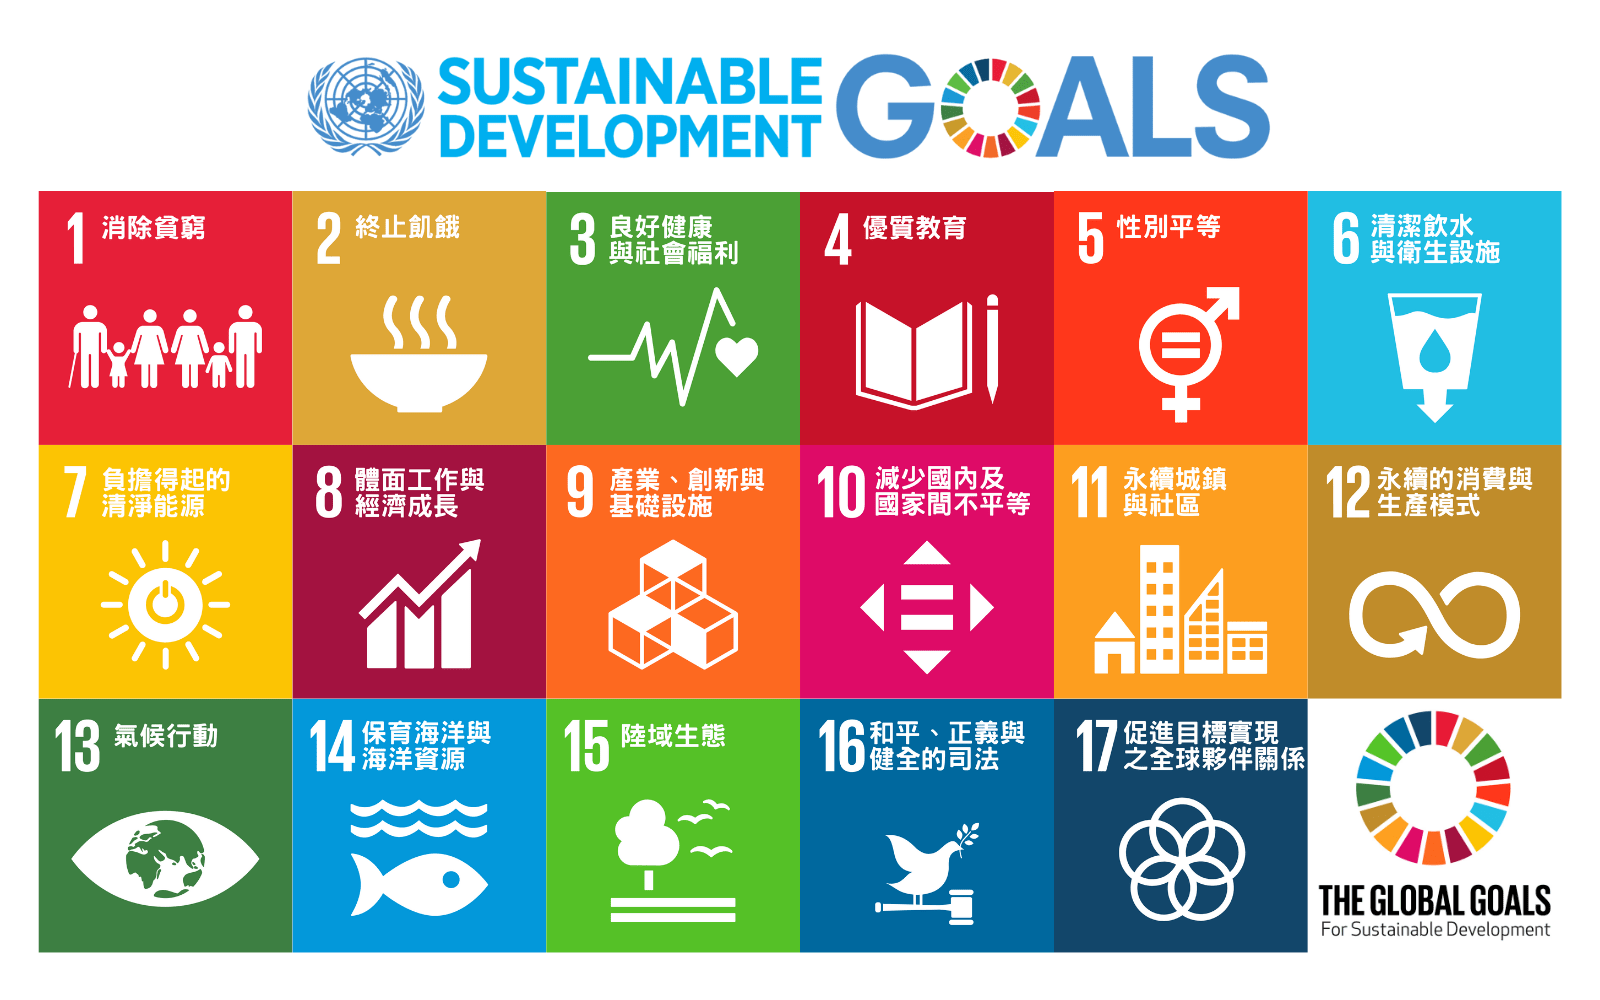 聯合國 SDGs 的 17項目標